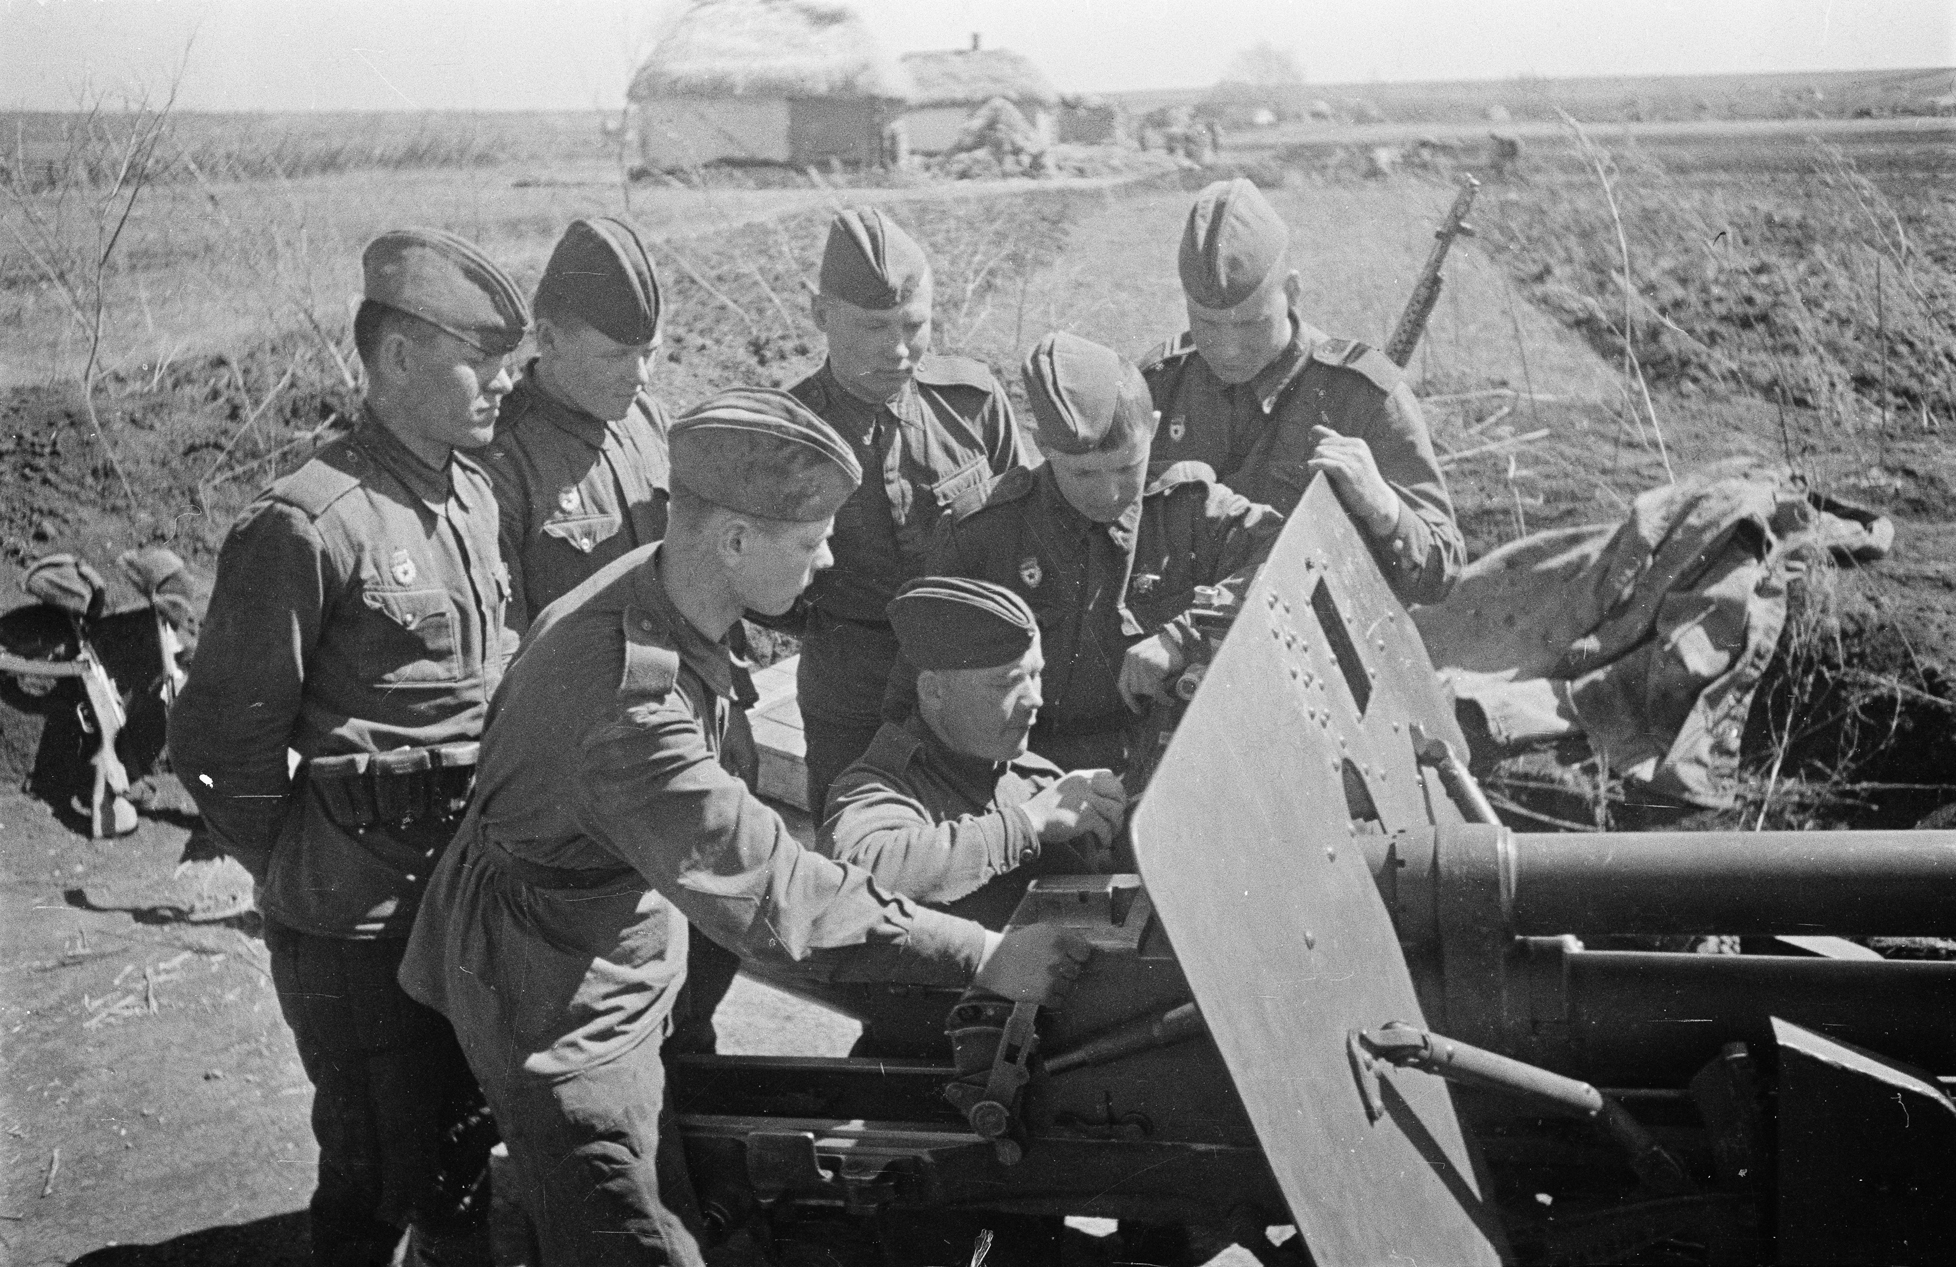 Воронежский фронт 1942 1943